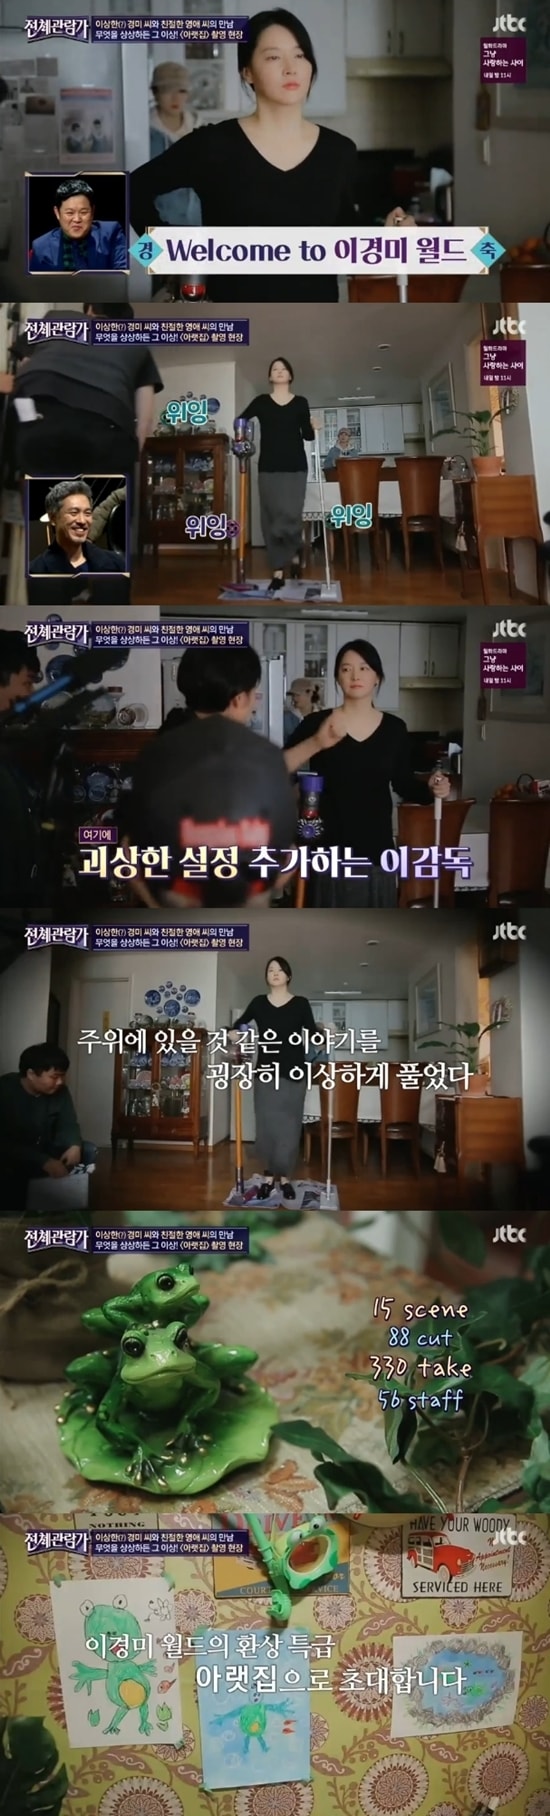 JTBC '전체관람가' 방송 화면 캡처 © News1